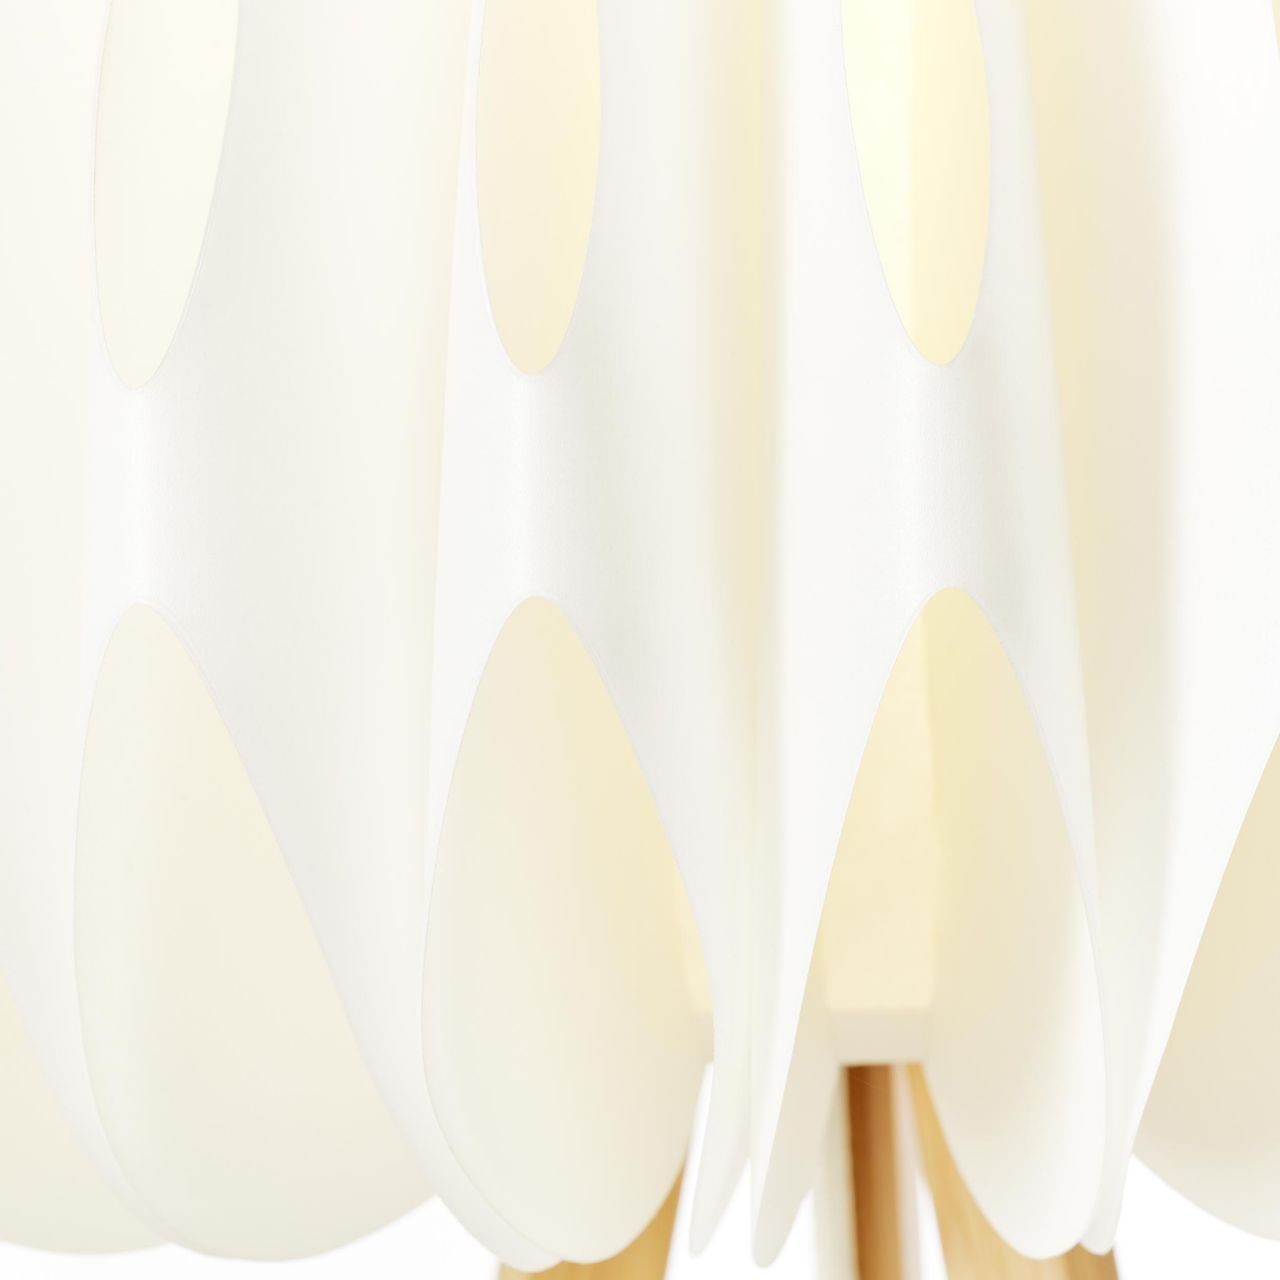 Brilliant Stehlampe Inna, dreibeinig holz Lampe, Inna hell/weiß, Bambus/Kunststoff Standleuchte